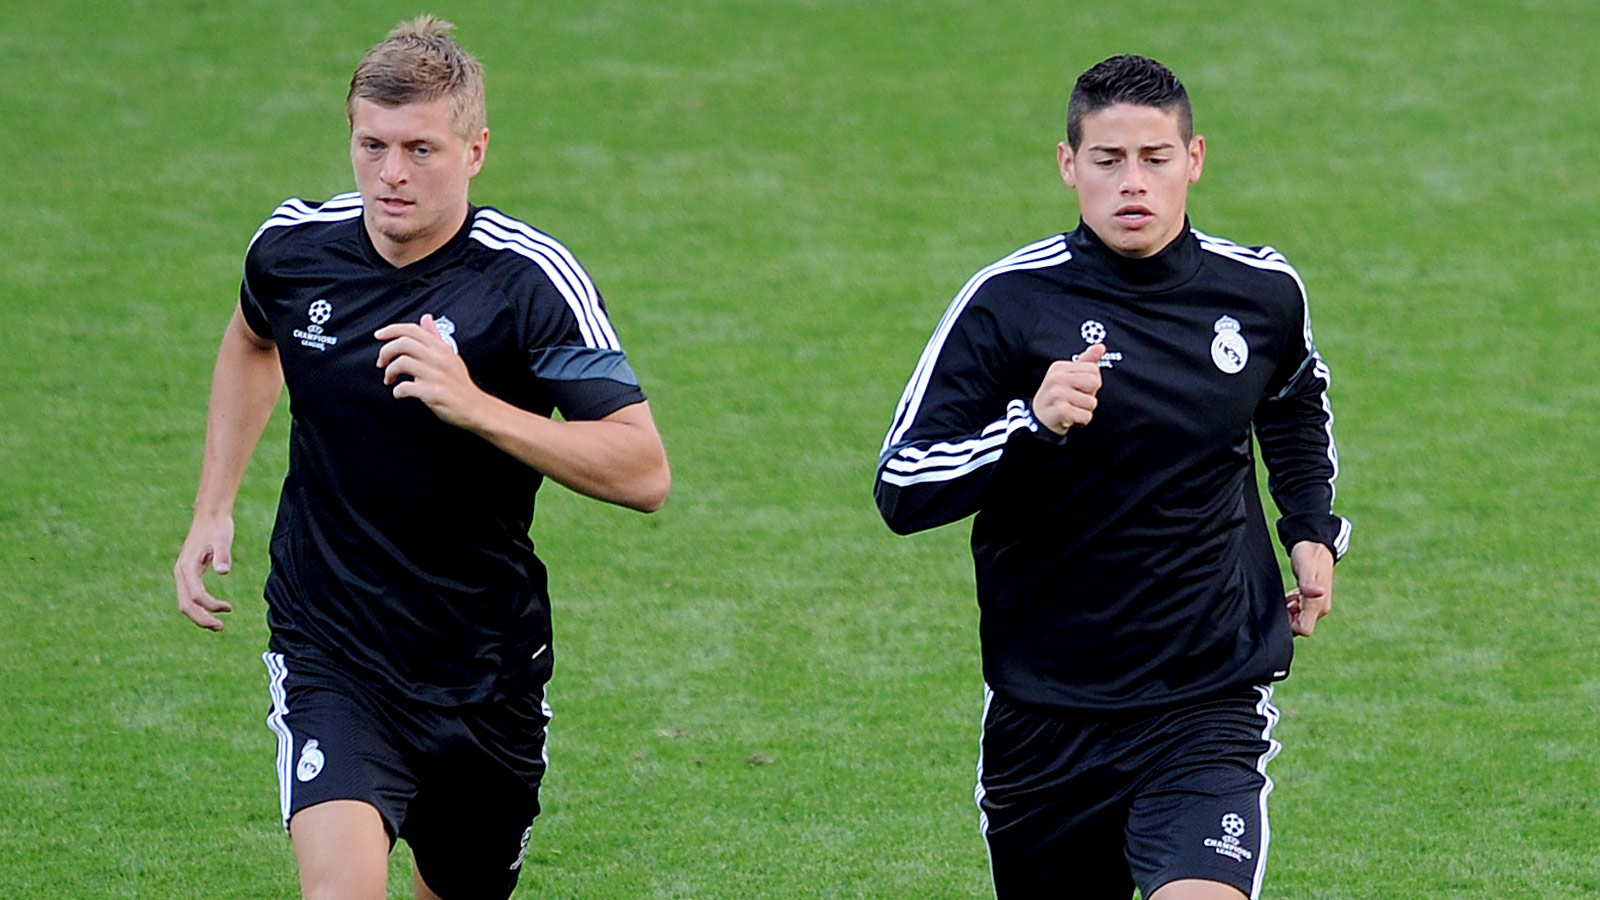 James y Kroos corren en un entrenamiento del Real Madrid